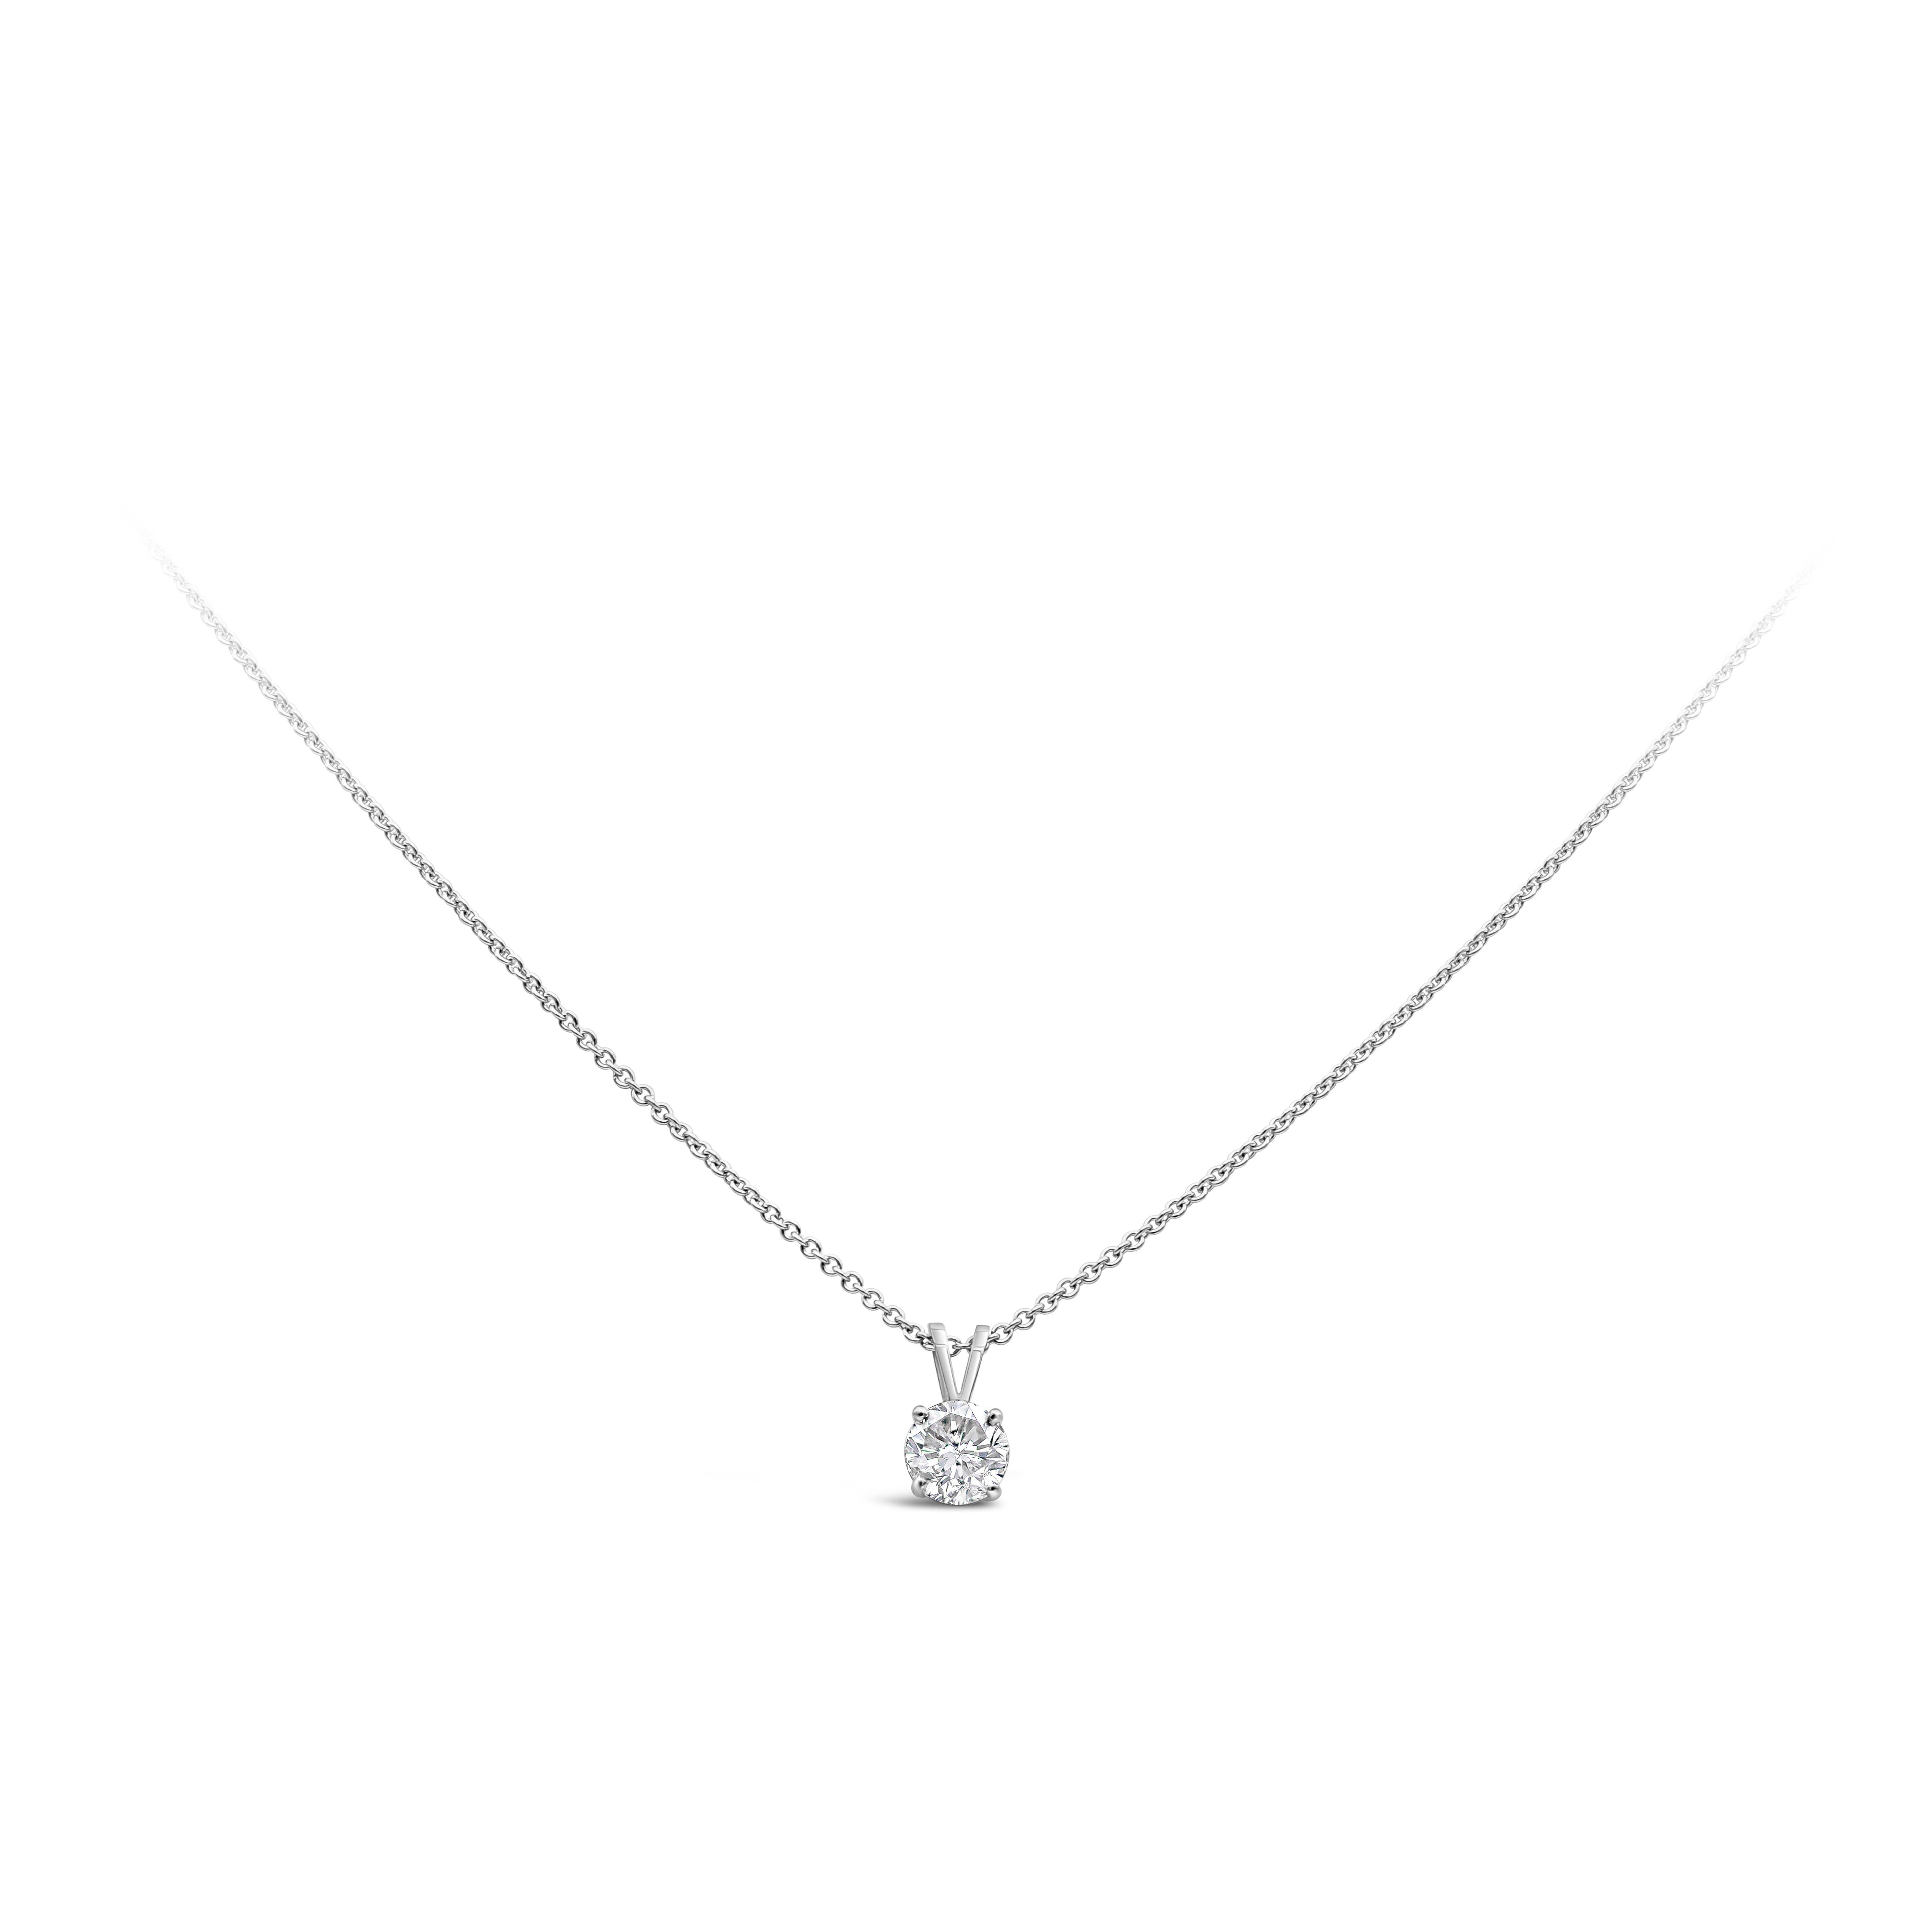 Ce collier pendentif simple et intemporel met en valeur un diamant brillant de taille ronde pesant 1,00 carats, de couleur F et de pureté SI3/I1. Monté dans une belle monture à quatre branches. Réalisé en or blanc 14 carats et 18 carats. 

Roman